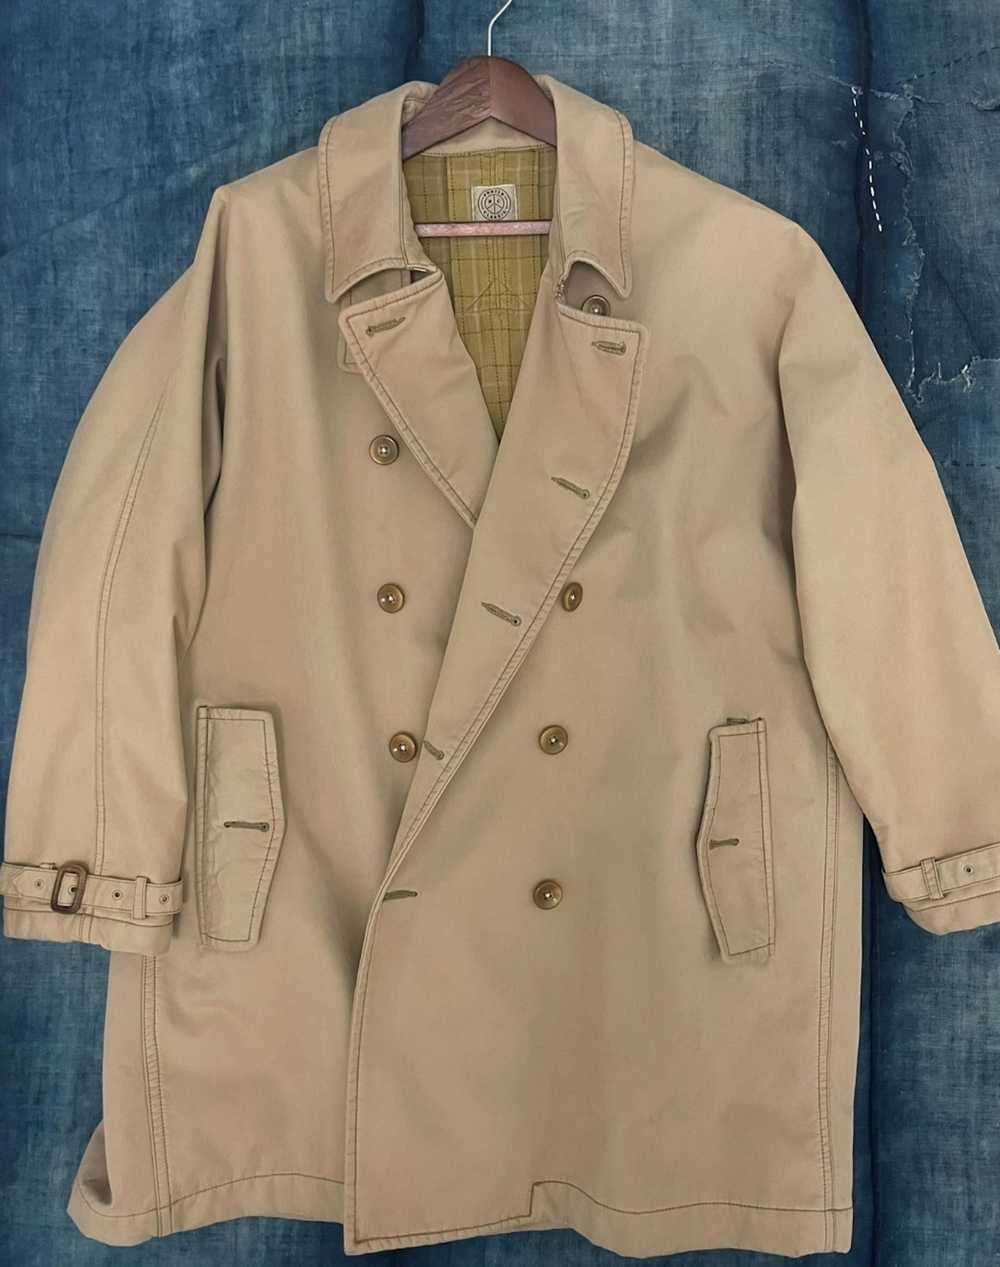 Porter Classic porter classic coat - image 1